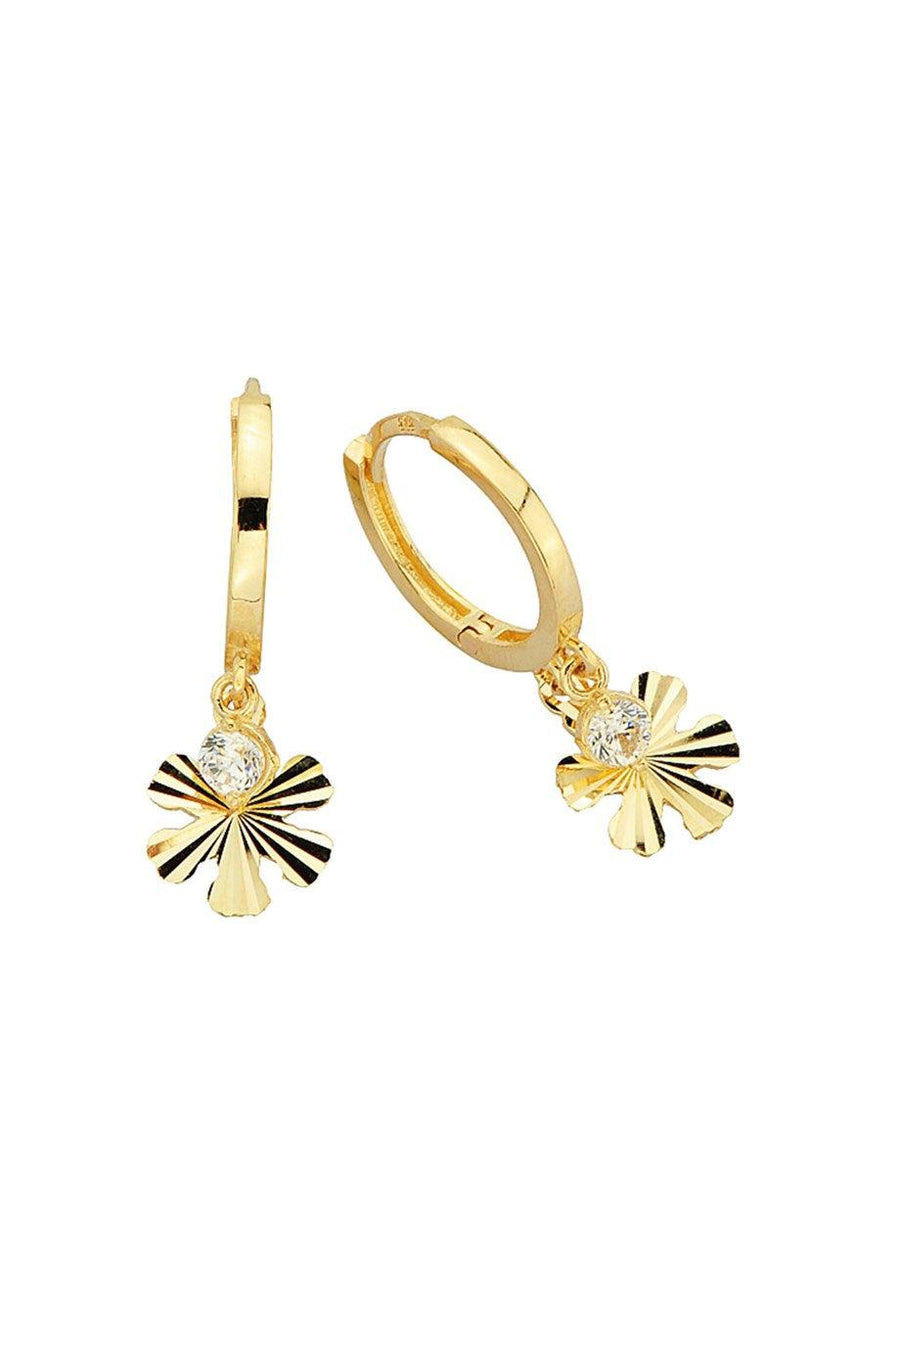 Golden Clover Ring Earrings